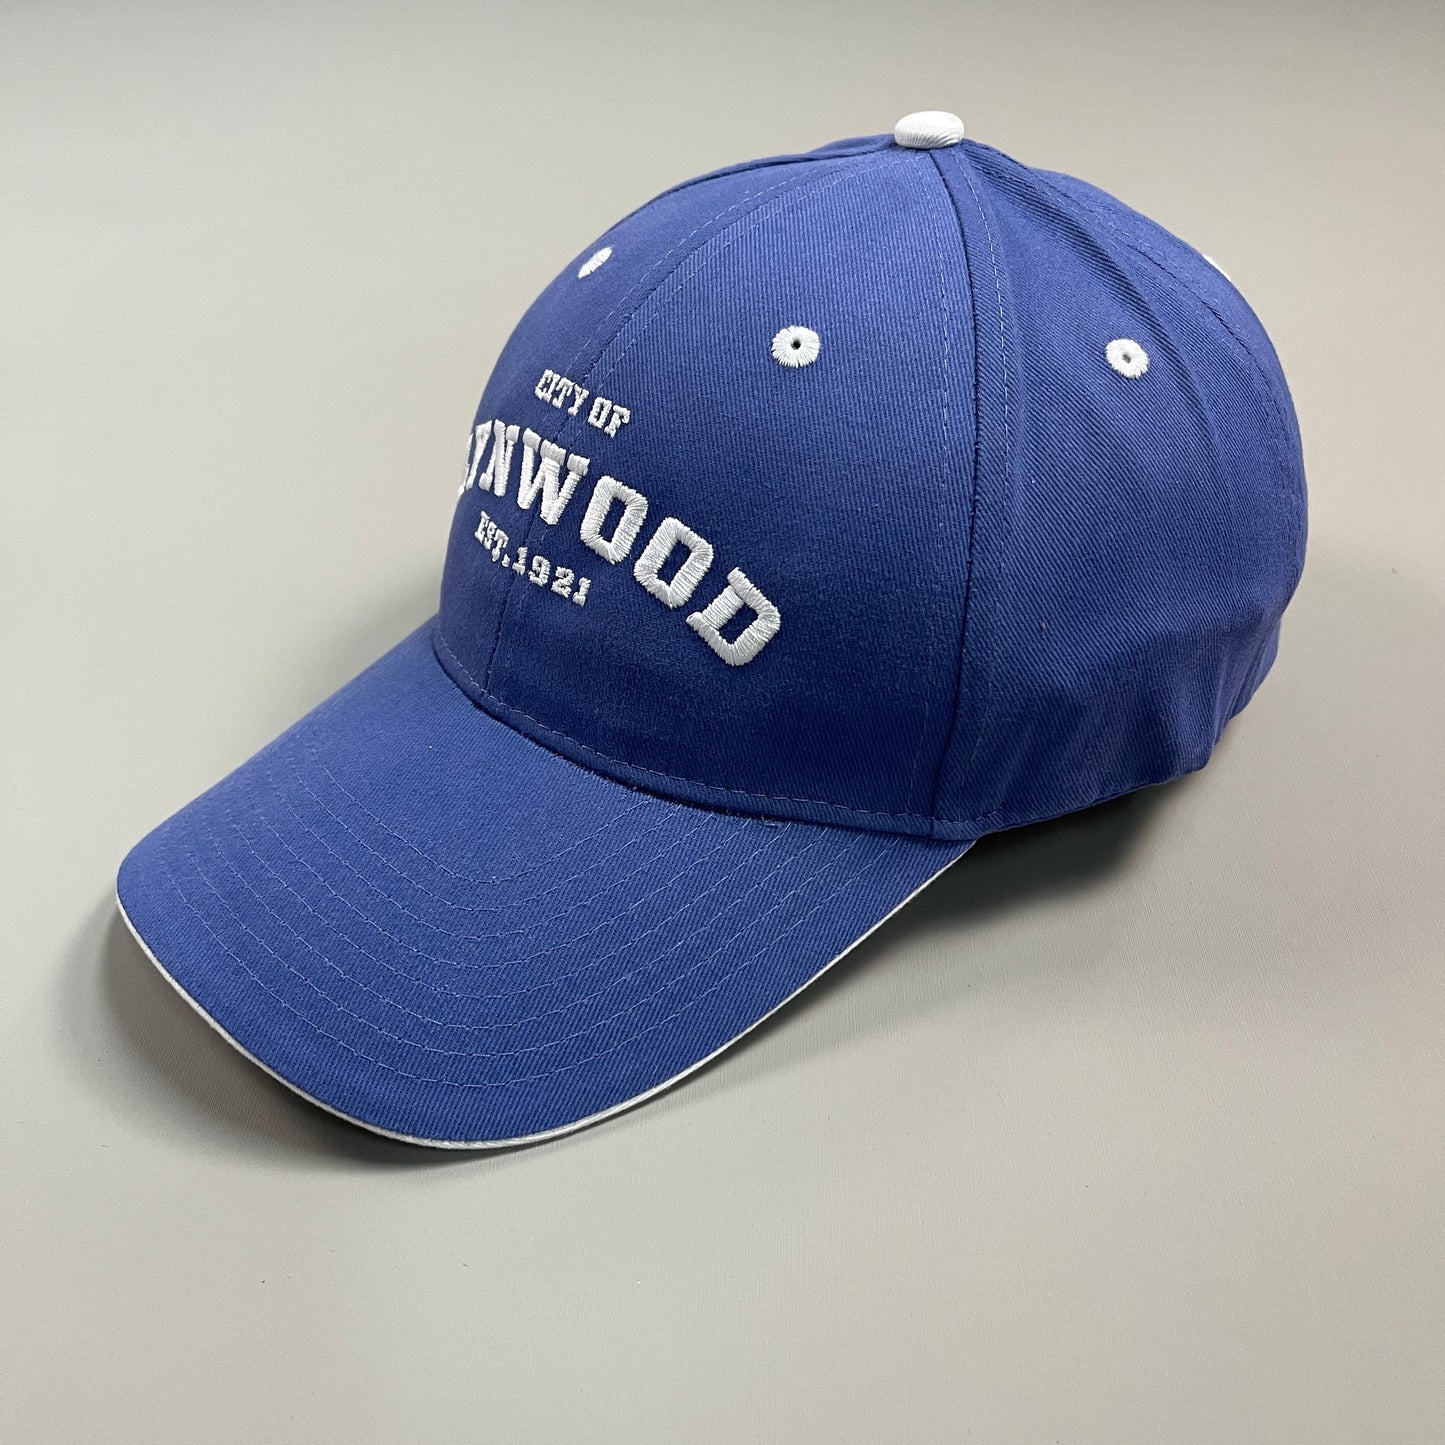 LYNWOOD "City Of Lynwood Est. 1921" Baseball Hat One Size Blue (New)